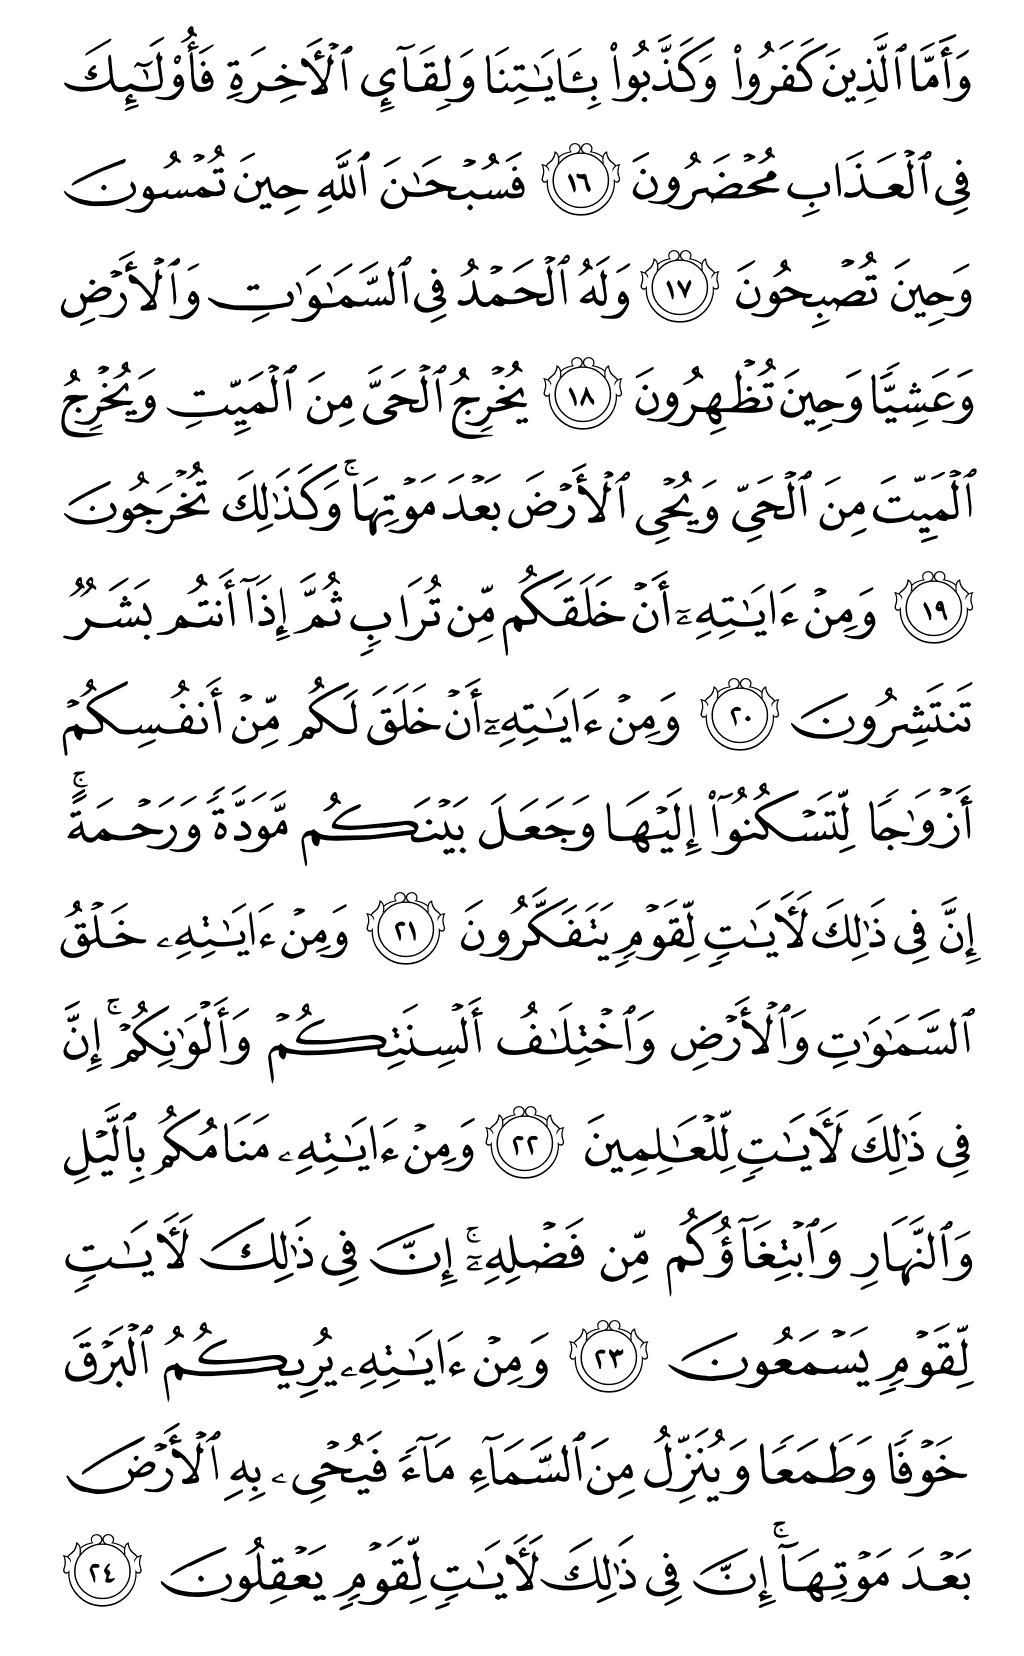 الصفحة رقم 406 من القرآن الكريم